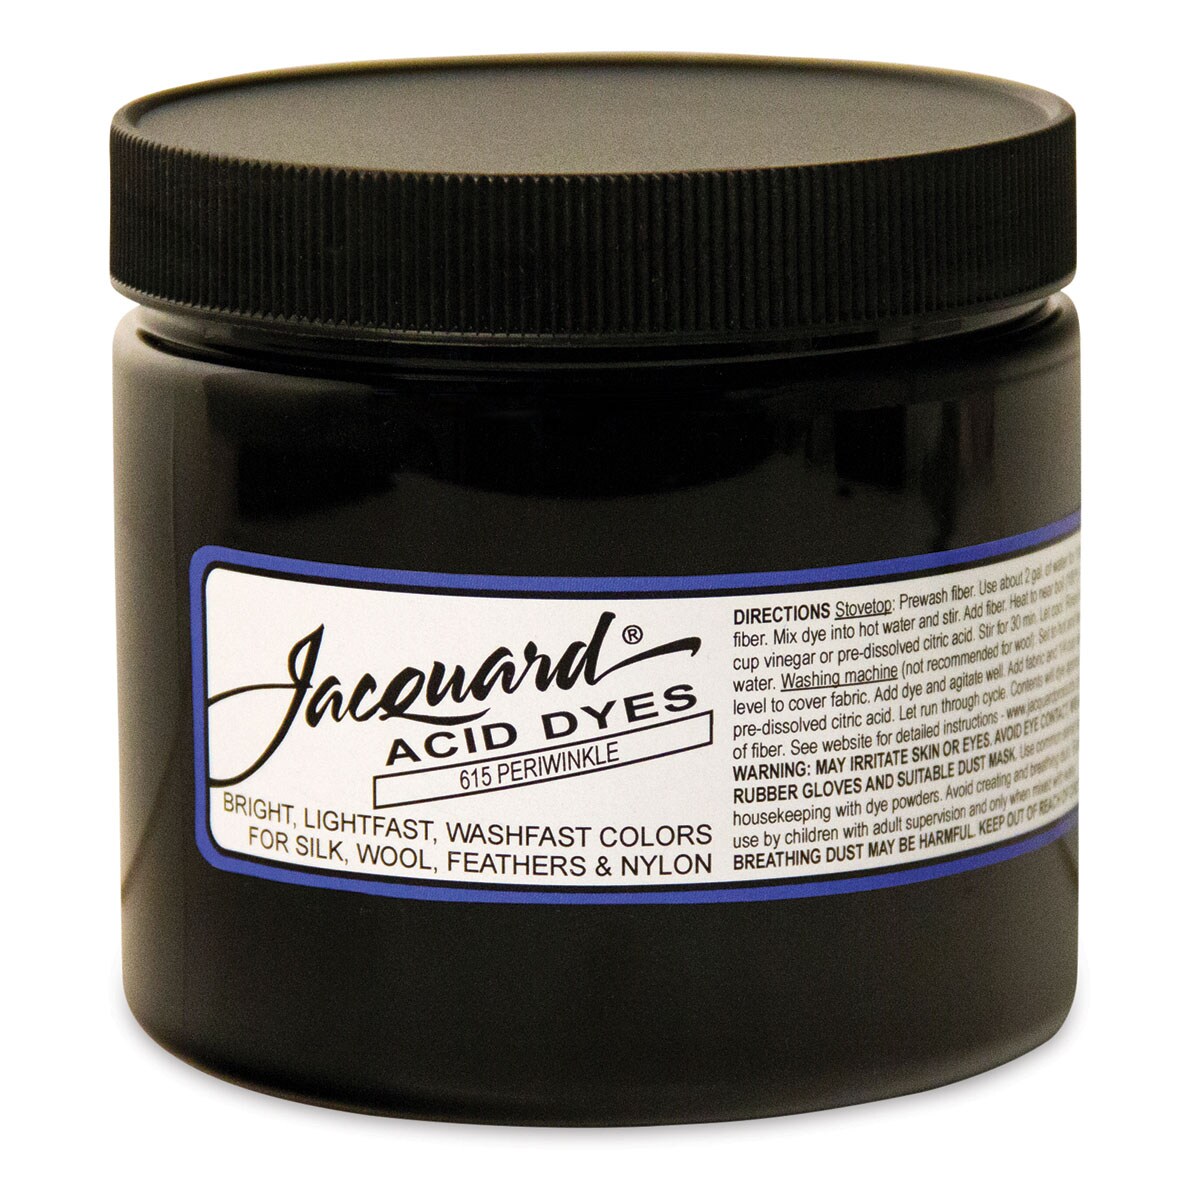 Jacquard Acid Dye - Periwinkle, 8 oz